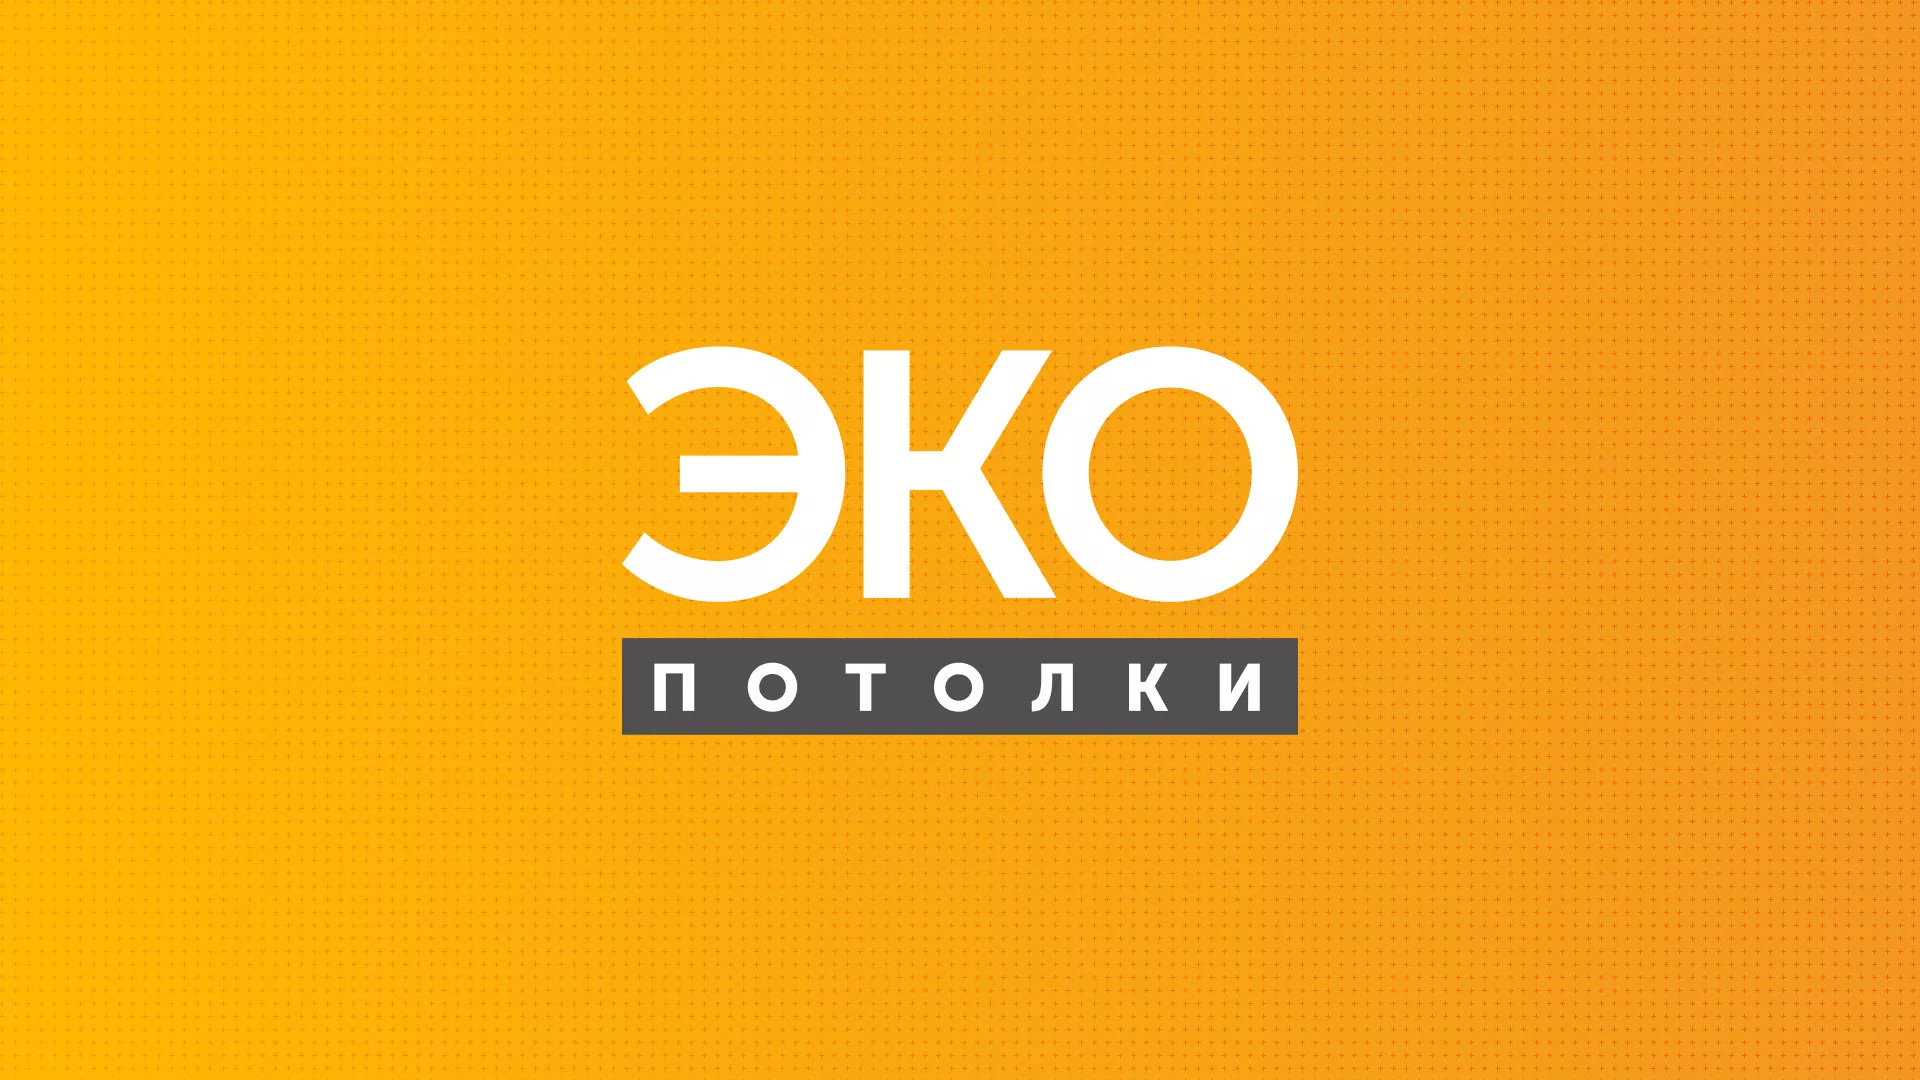 Разработка сайта по натяжным потолкам «Эко Потолки» в Краснокаменске